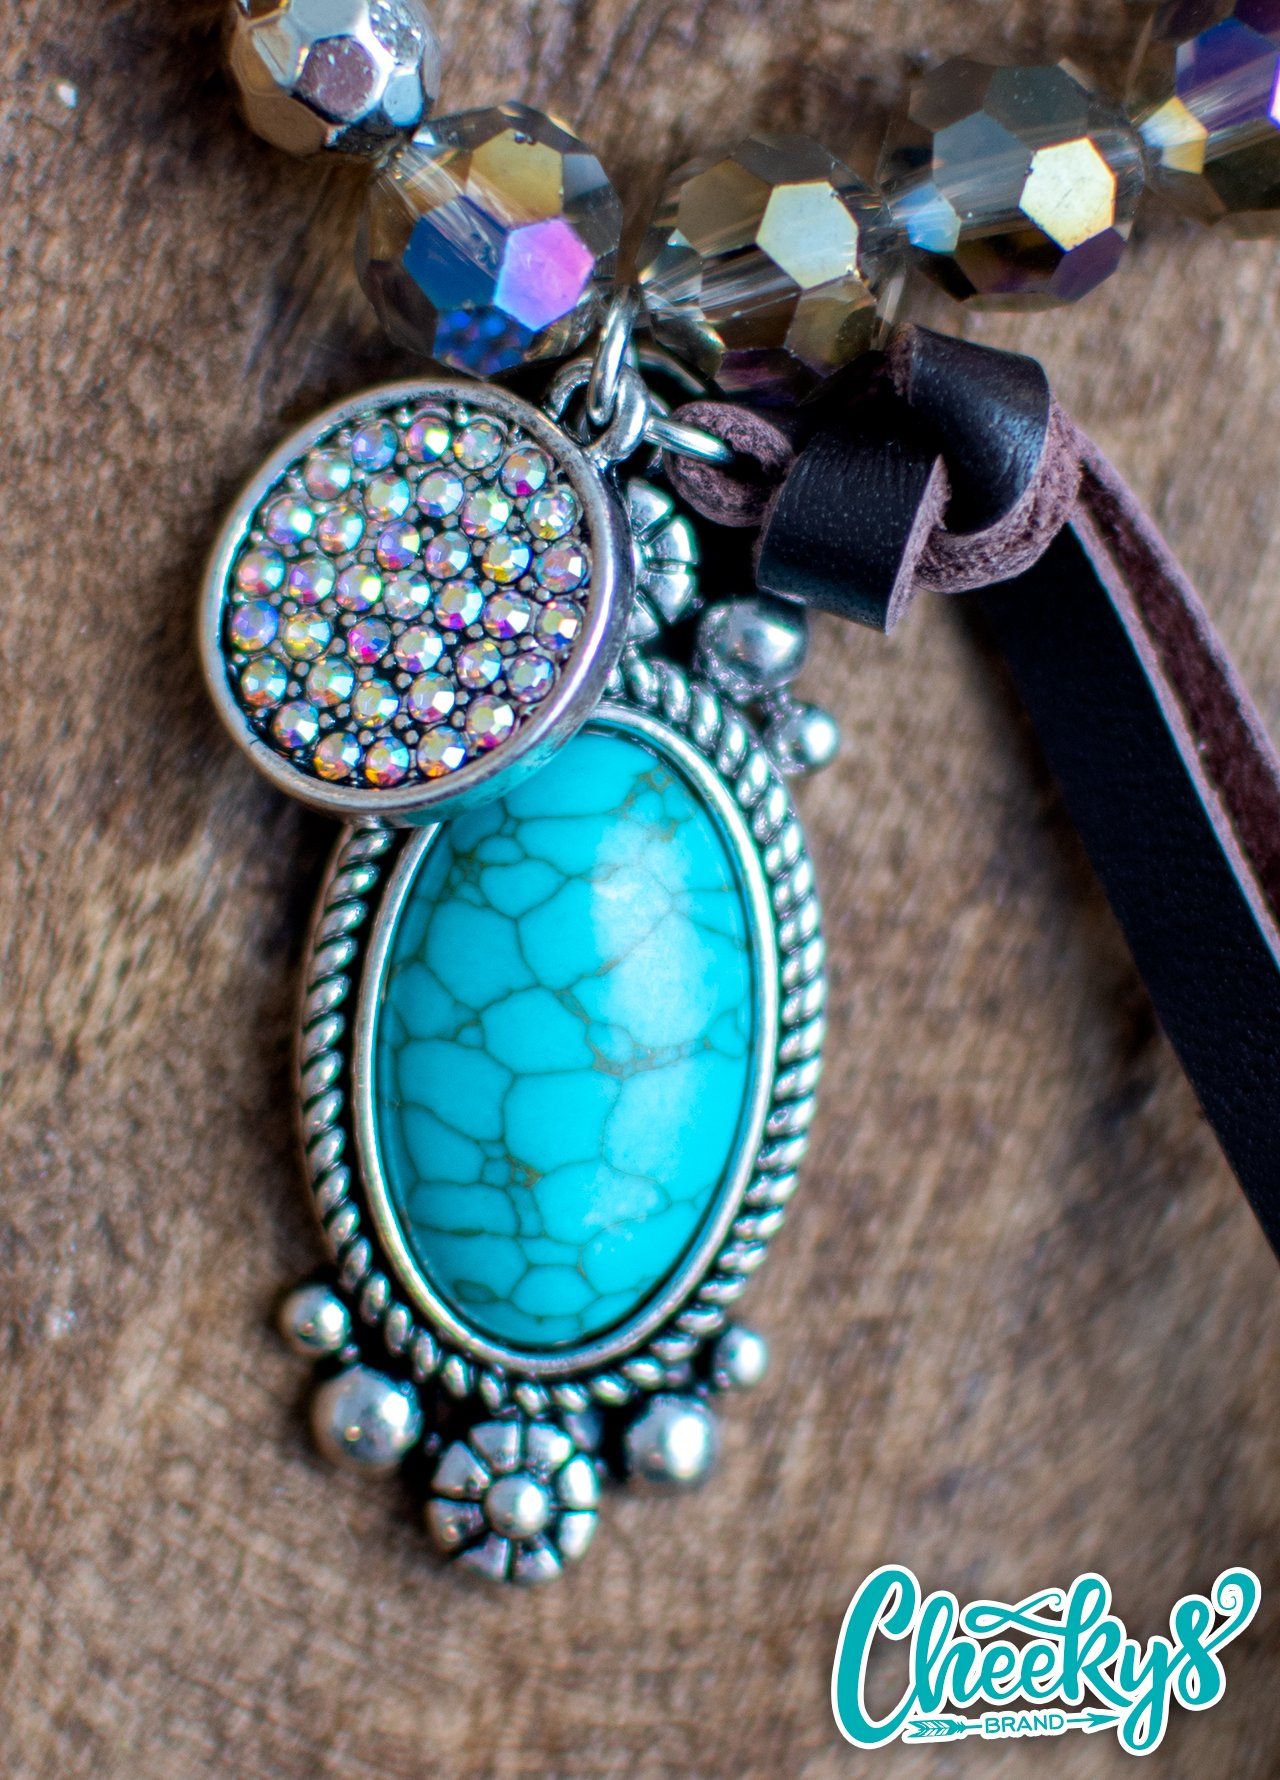 Iridescent Smokey Quartz and Turquoise Concho Bracelet Jewelry 18 